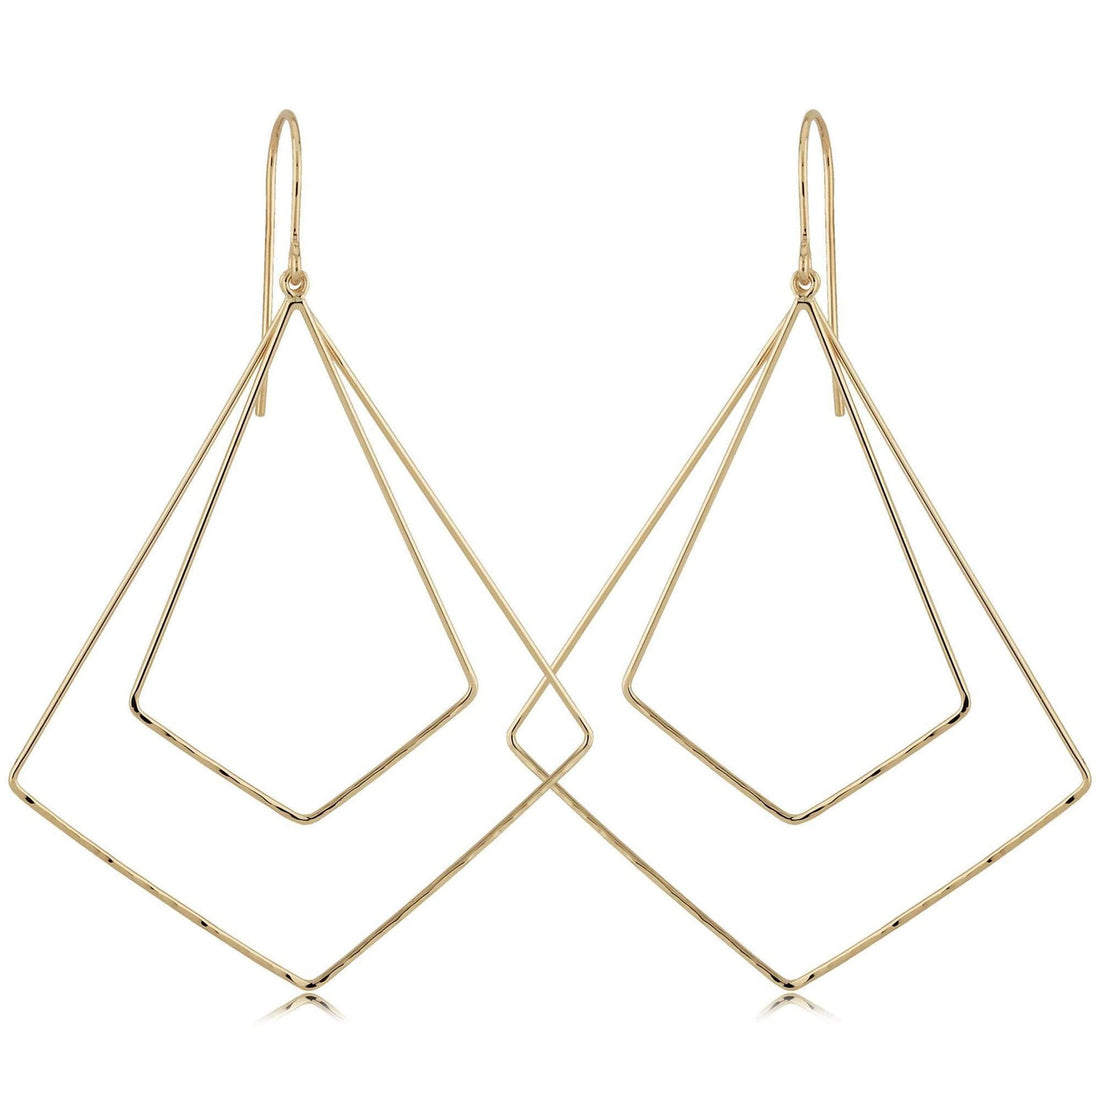 Double Diamond Shaped Gold Dangle Earrings by Carla Nancy B. - Skeie's Jewelers